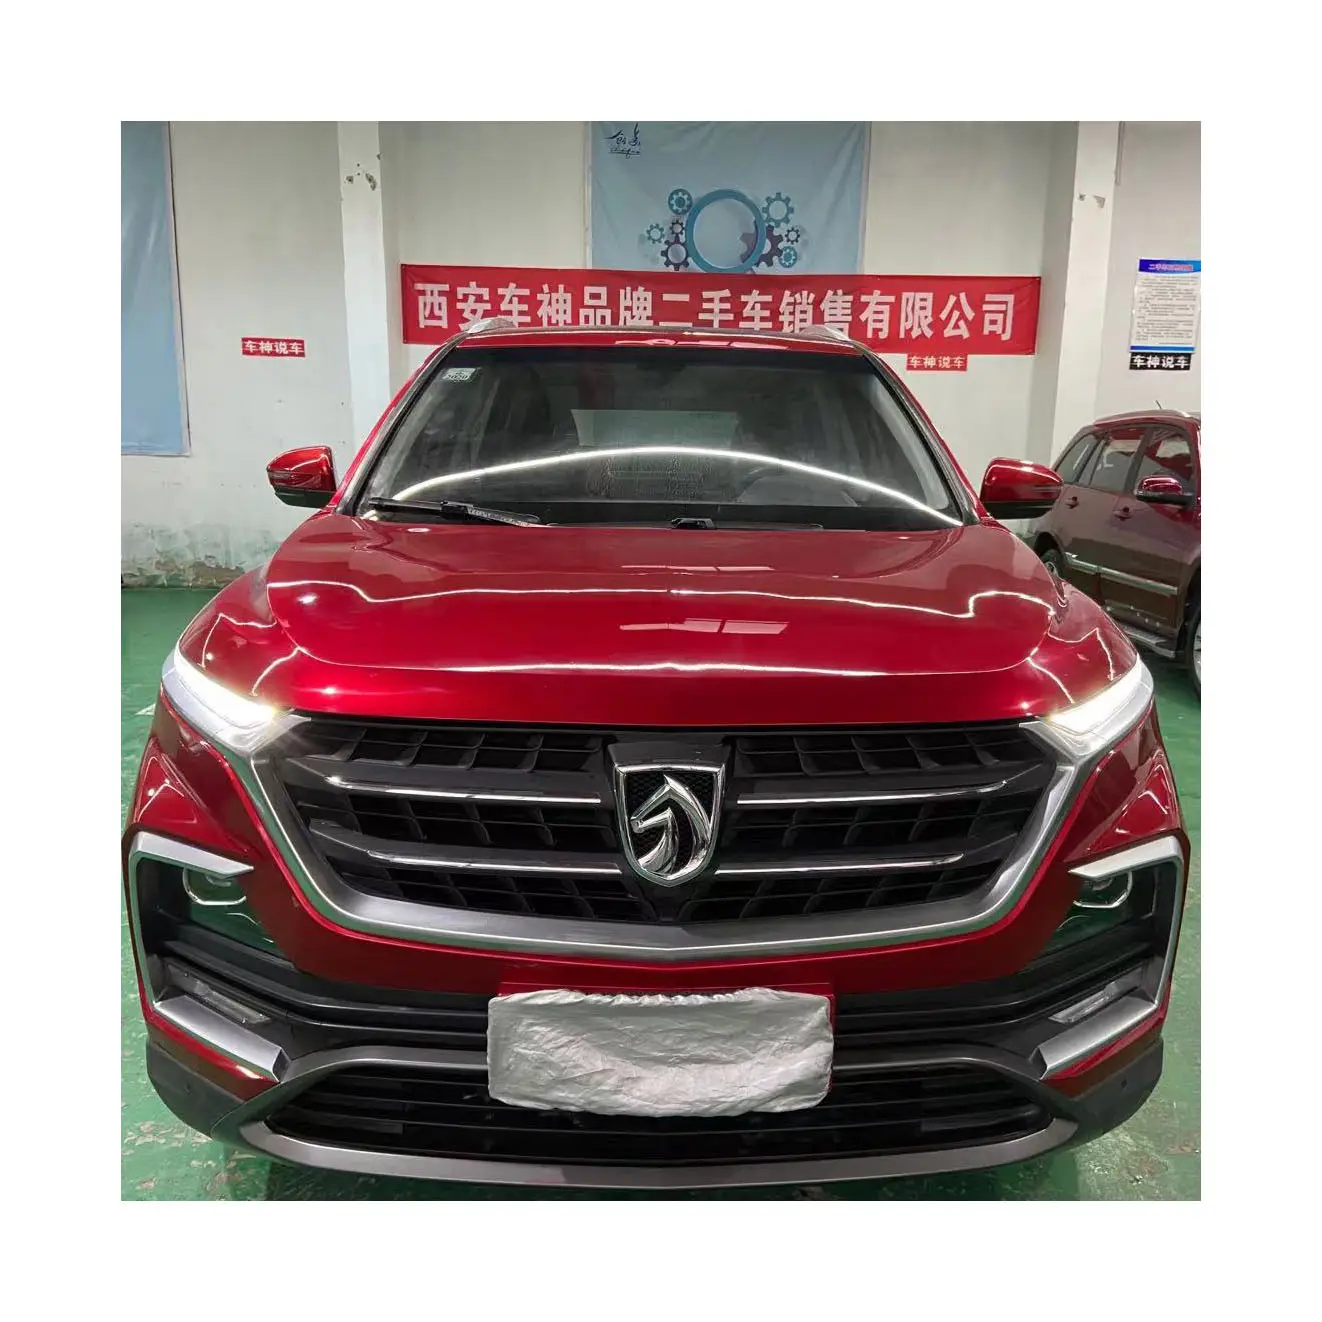 2018 Màu Đỏ Sử Dụng Baojun 530 SUV 1.5T Hướng Dẫn Sử Dụng Cao Quý